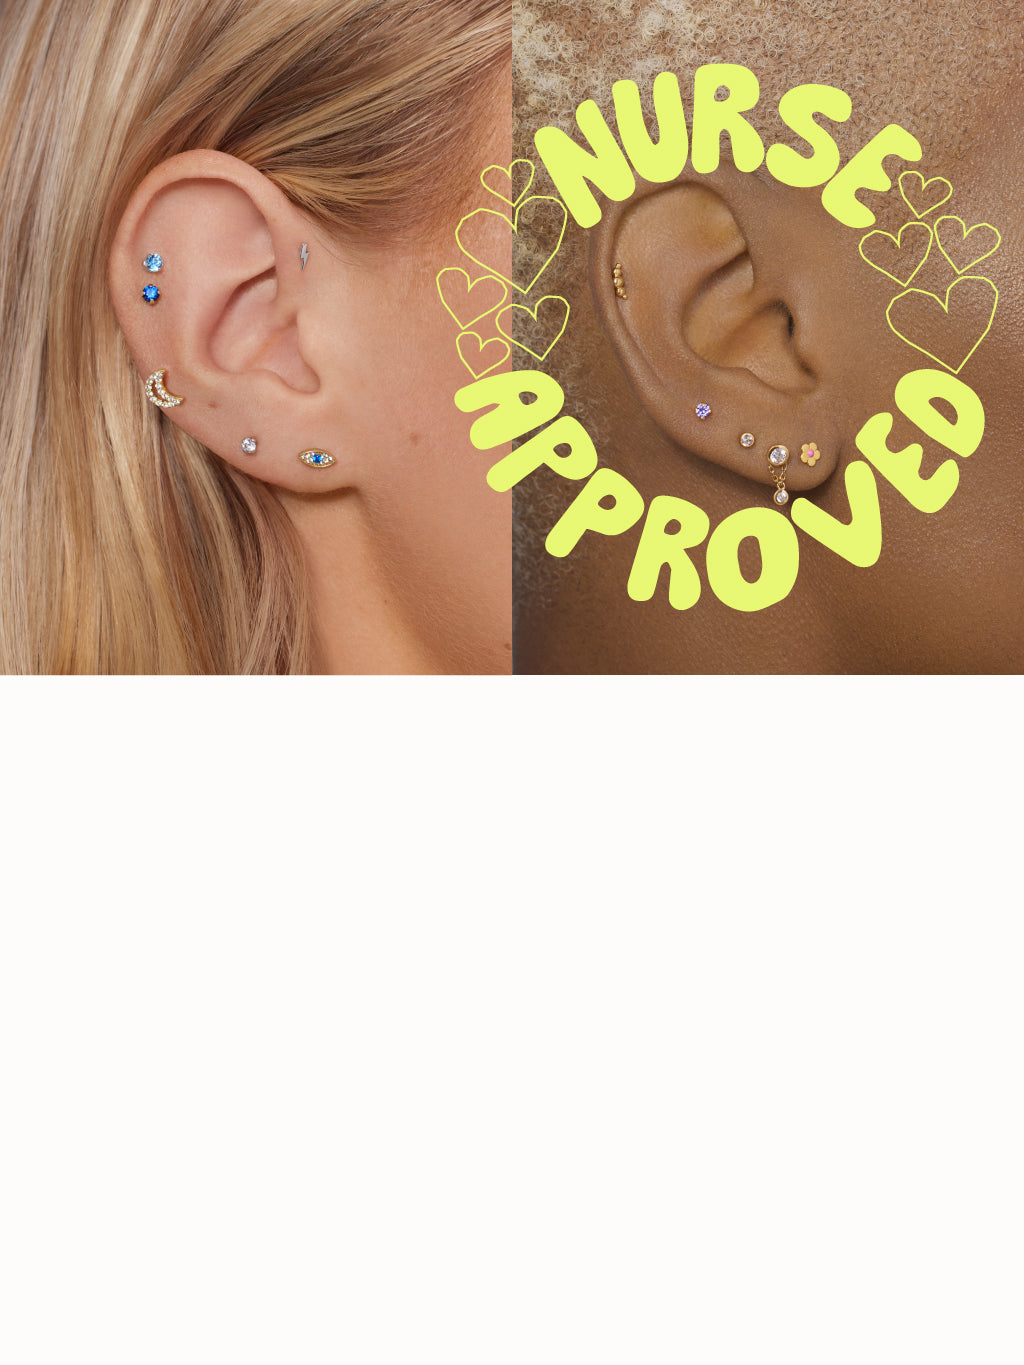 Miki Crystal Flower Ear Piercing Earring Stud Set | Stud earrings set, Cute ear  piercings, Earings piercings